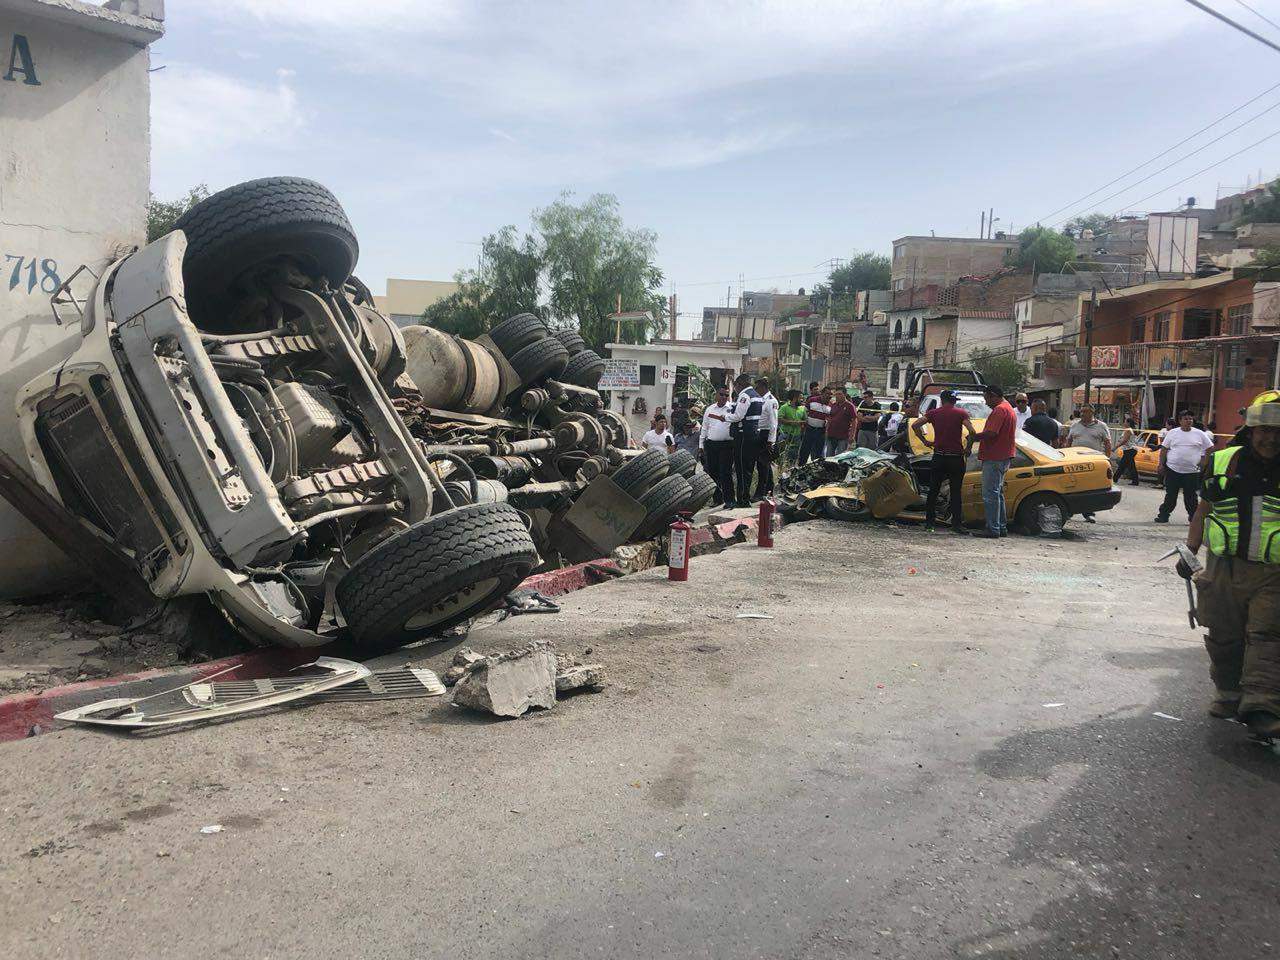 Una revolvedora cargada con cemento, se impactó durante la mañana de hoy contra un taxi y otro vehículo particular en una colonia de Saltillo.